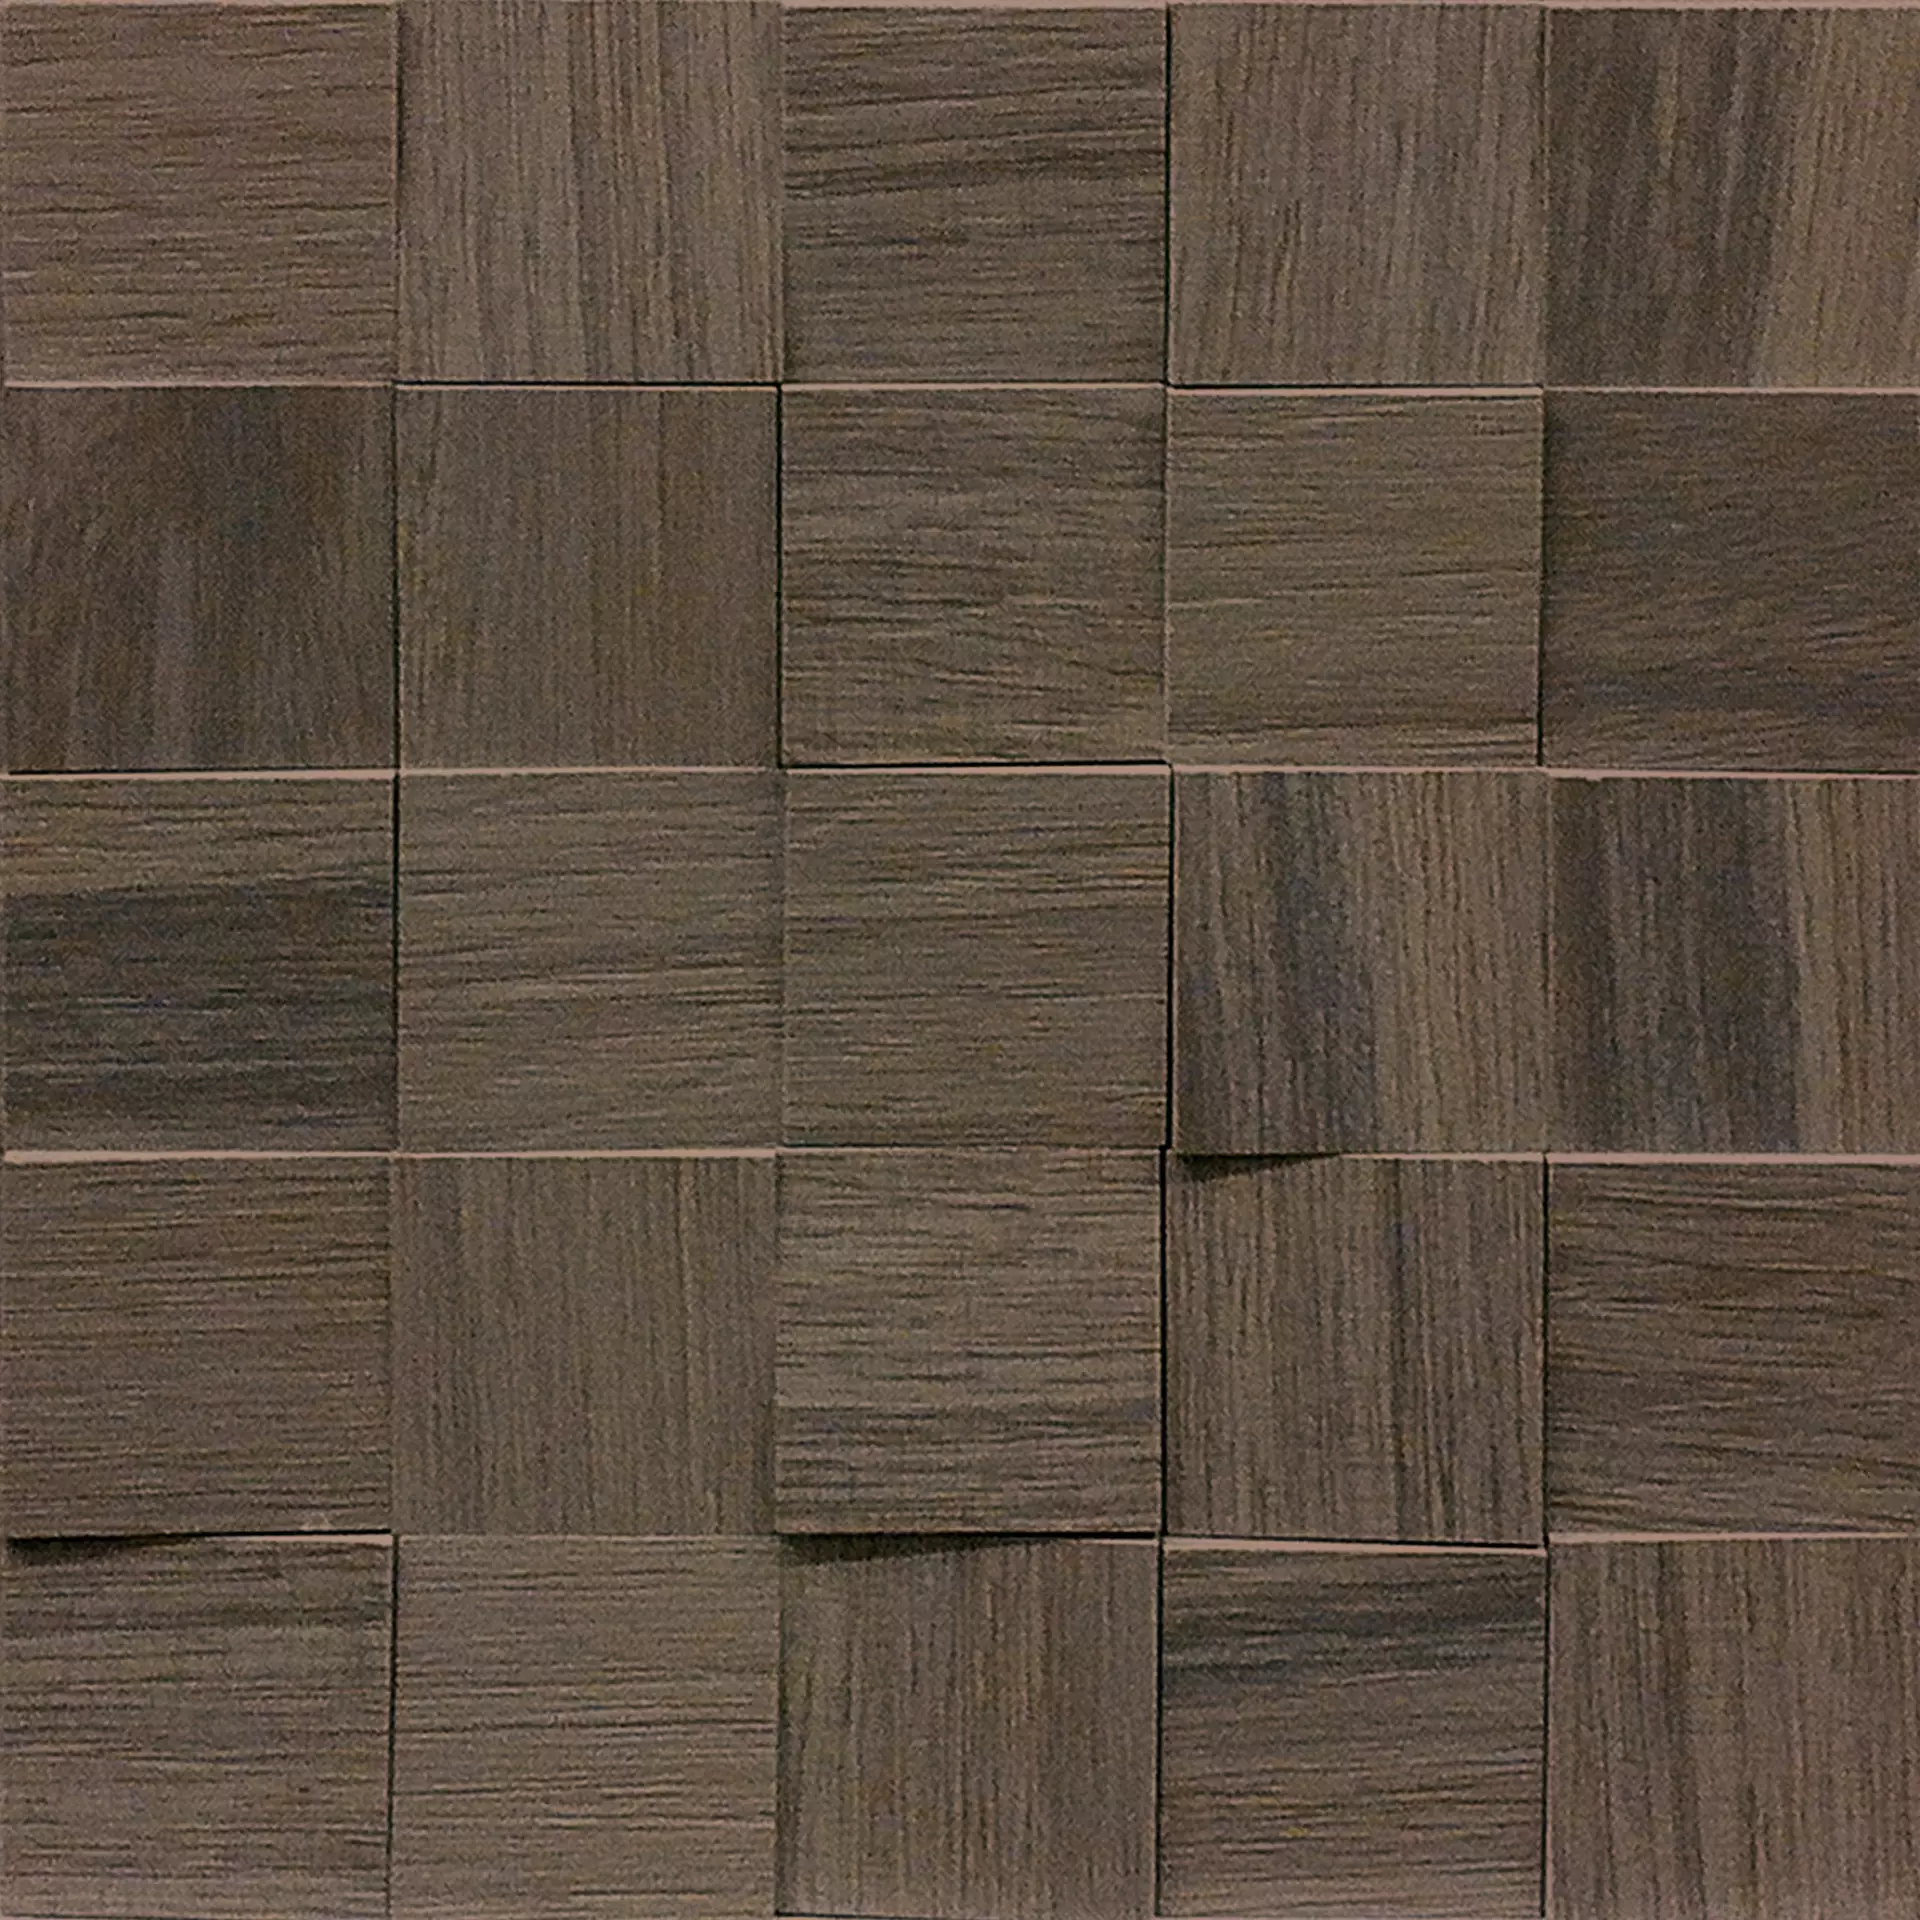 Florim Wooden Tile Of Casa Dolce Casa Brown Naturale – Matt Brown 742059 matt natur 30x30cm Mosaik 3D 6x6 9mm